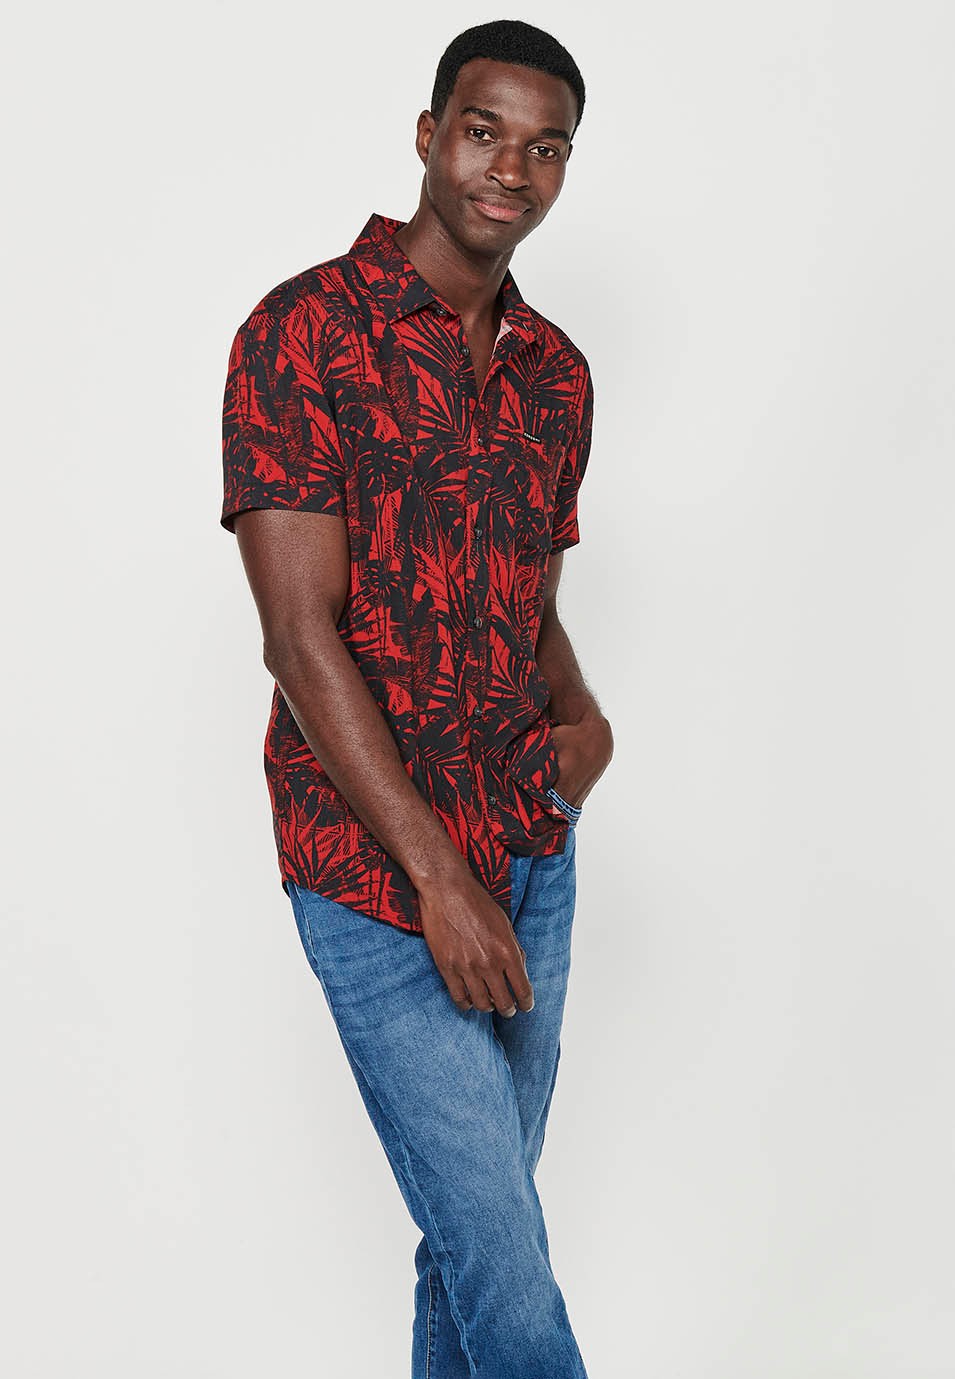 Chemise à manches courtes pour hommes, imprimé floral rouge, fermeture boutonnée sur le devant 6